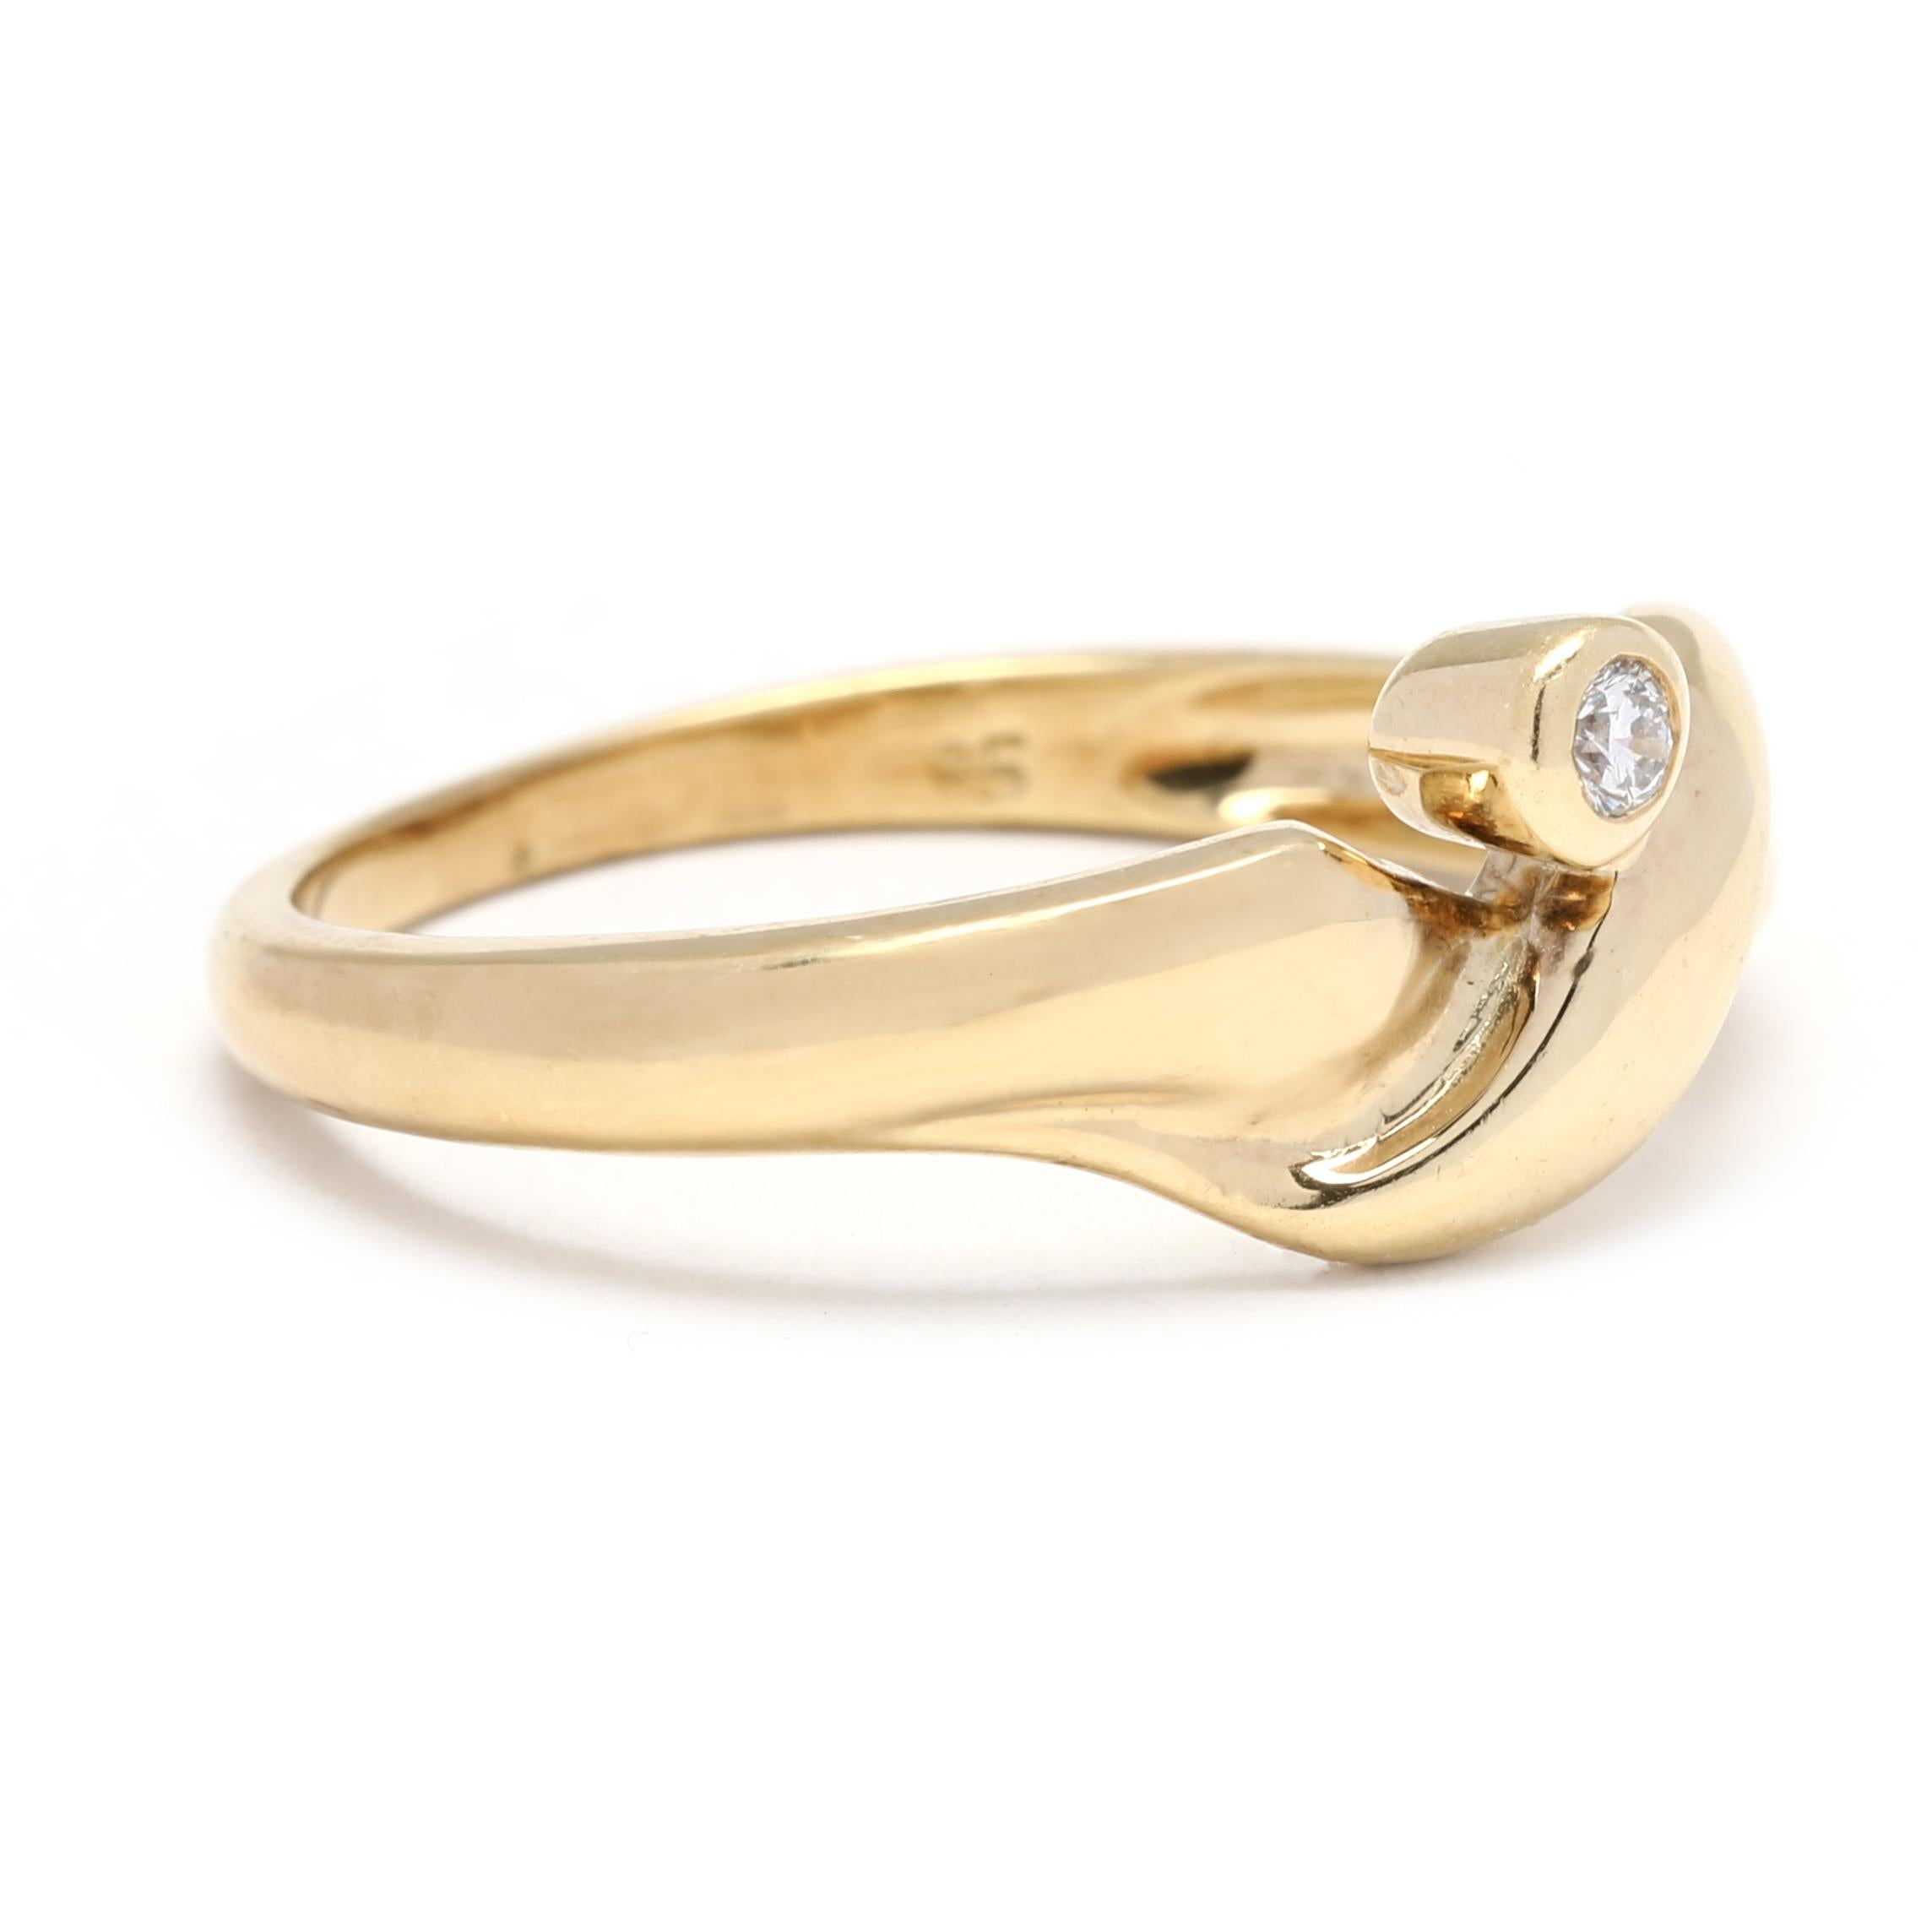 Ce magnifique bracelet croisé en or jaune 14K avec diamants est un ajout magnifique et délicat à toute collection de bijoux. Avec 0,03 carats de diamants dans un design croisé unique, ce bracelet délicat et empilable ajoute sophistication et éclat à